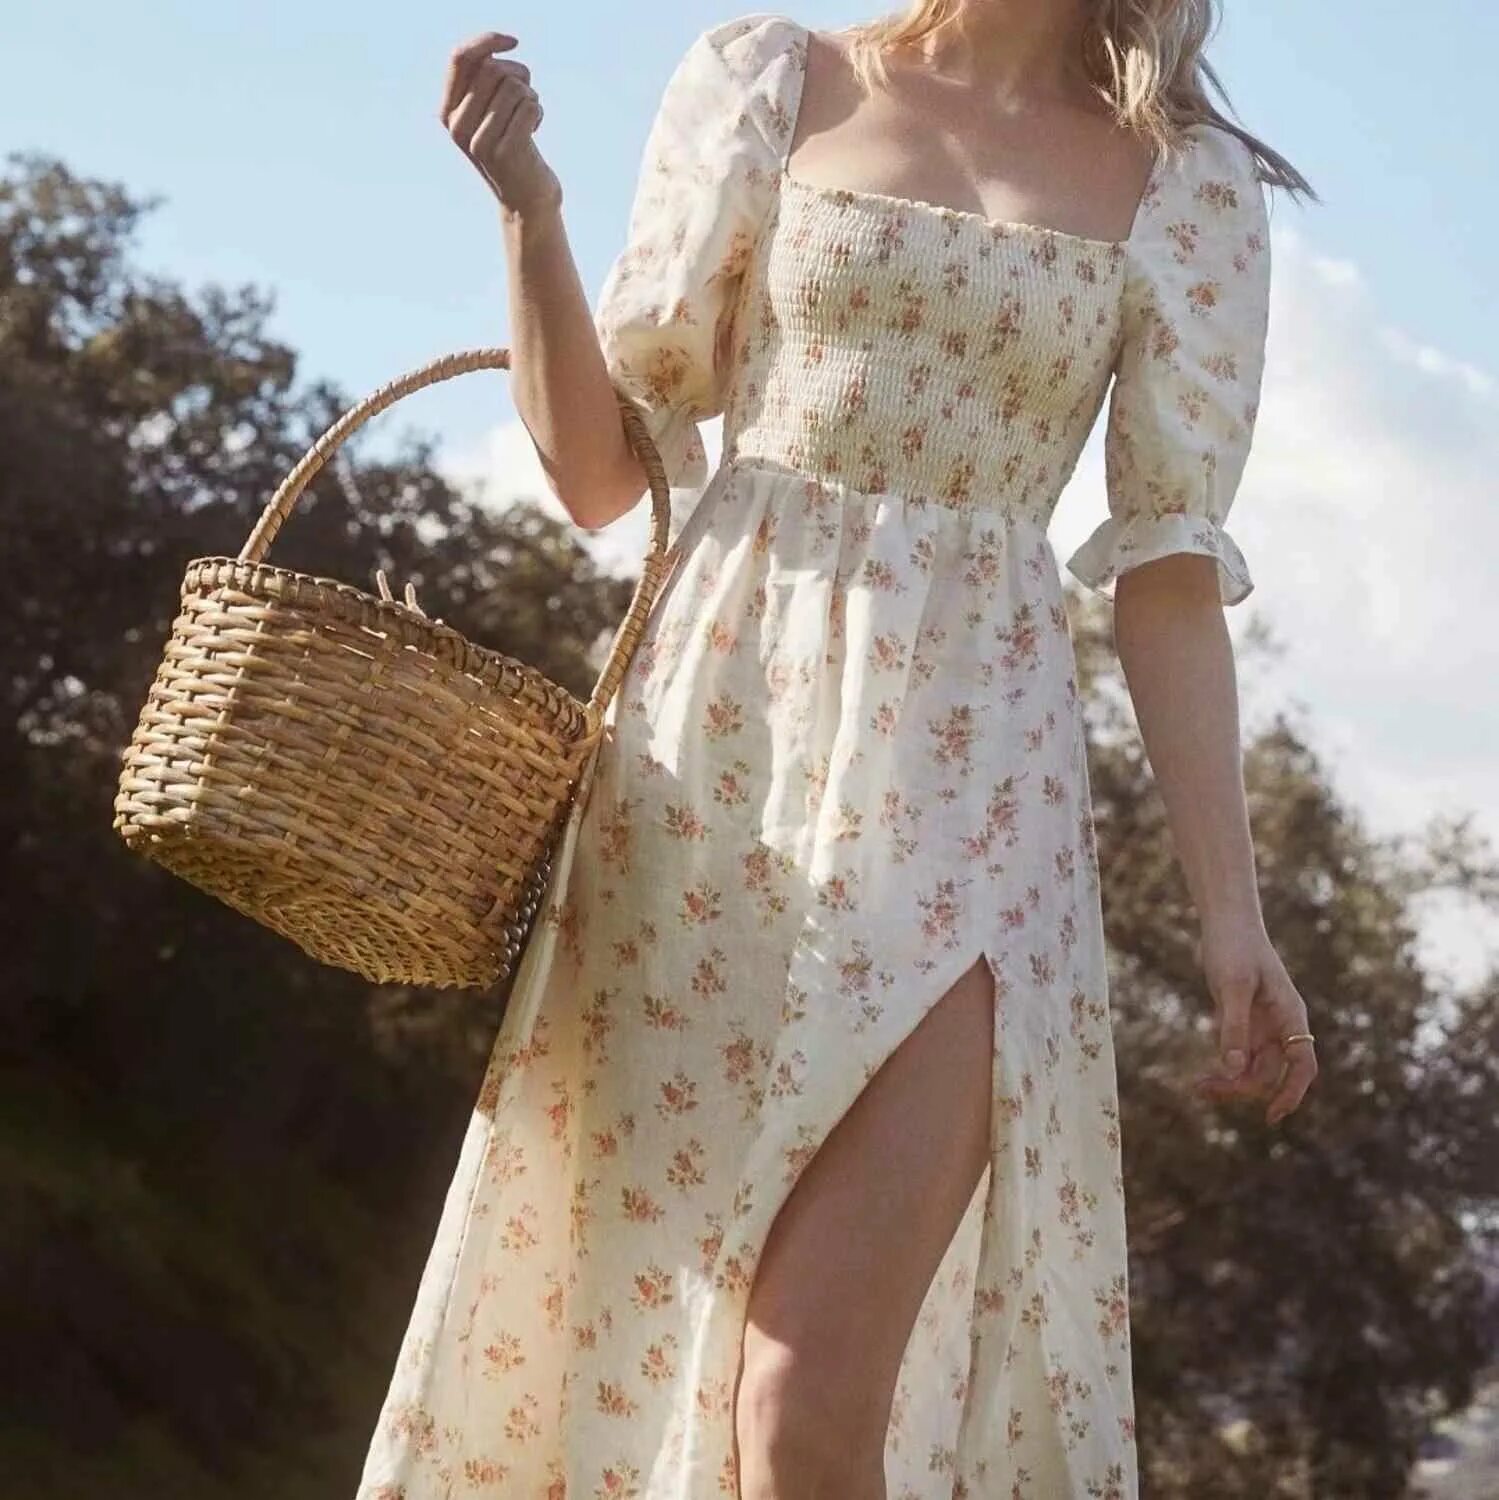 Деревенское платье. Эльза Хоск в платье. Платье в деревенском стиле. Платье в романтическом стиле. Летнее платье в винтажном стиле.